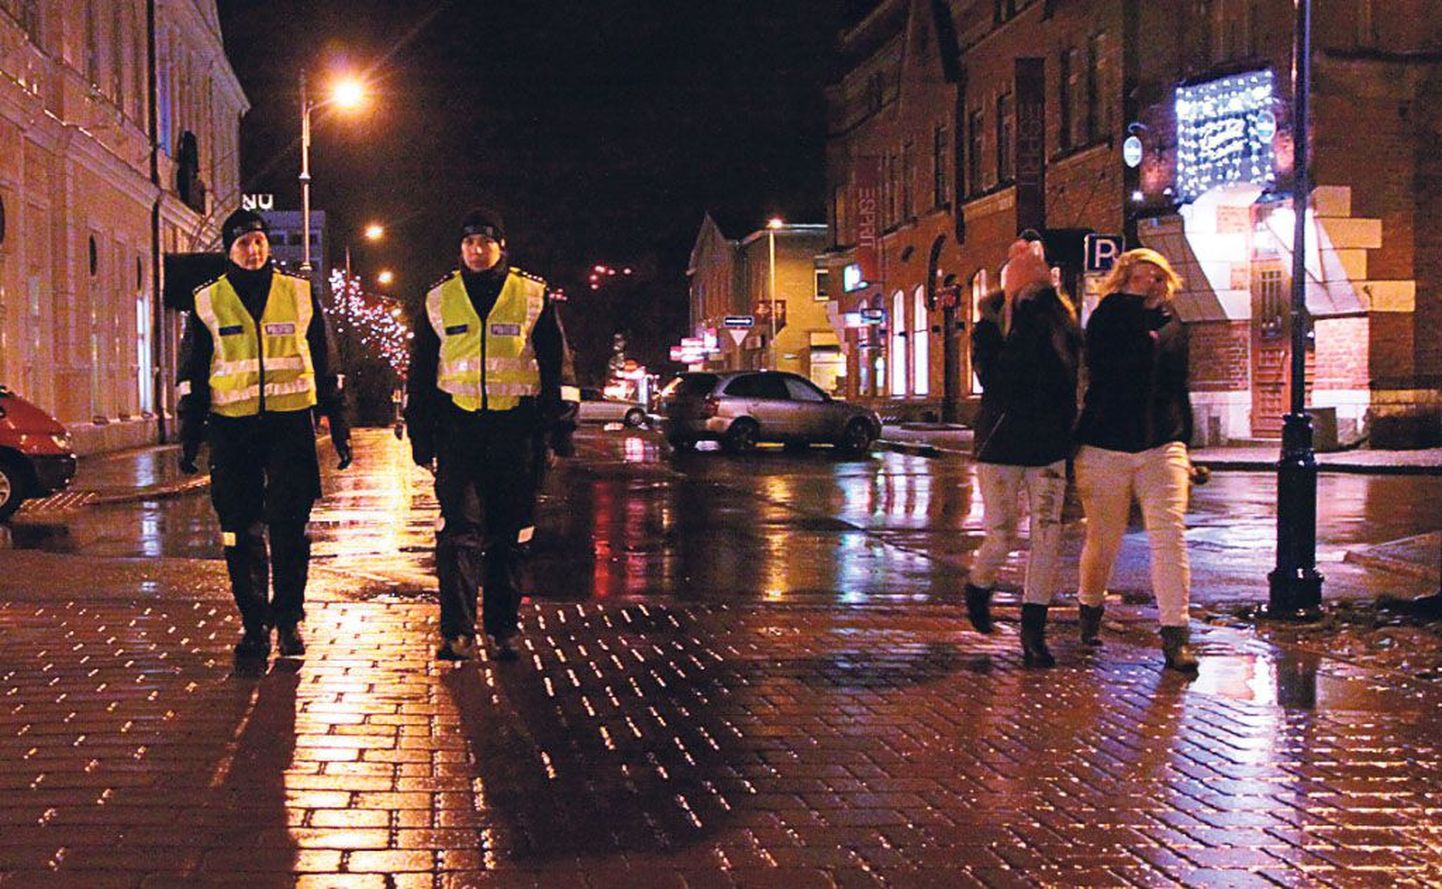 Rüütli tänav mattub õhtu saabudes pimedusse, mistõttu on üsna keerukas järgida politsei soovitust valida turvaliseks liikumiseks hästi valgustatud tänavaid.